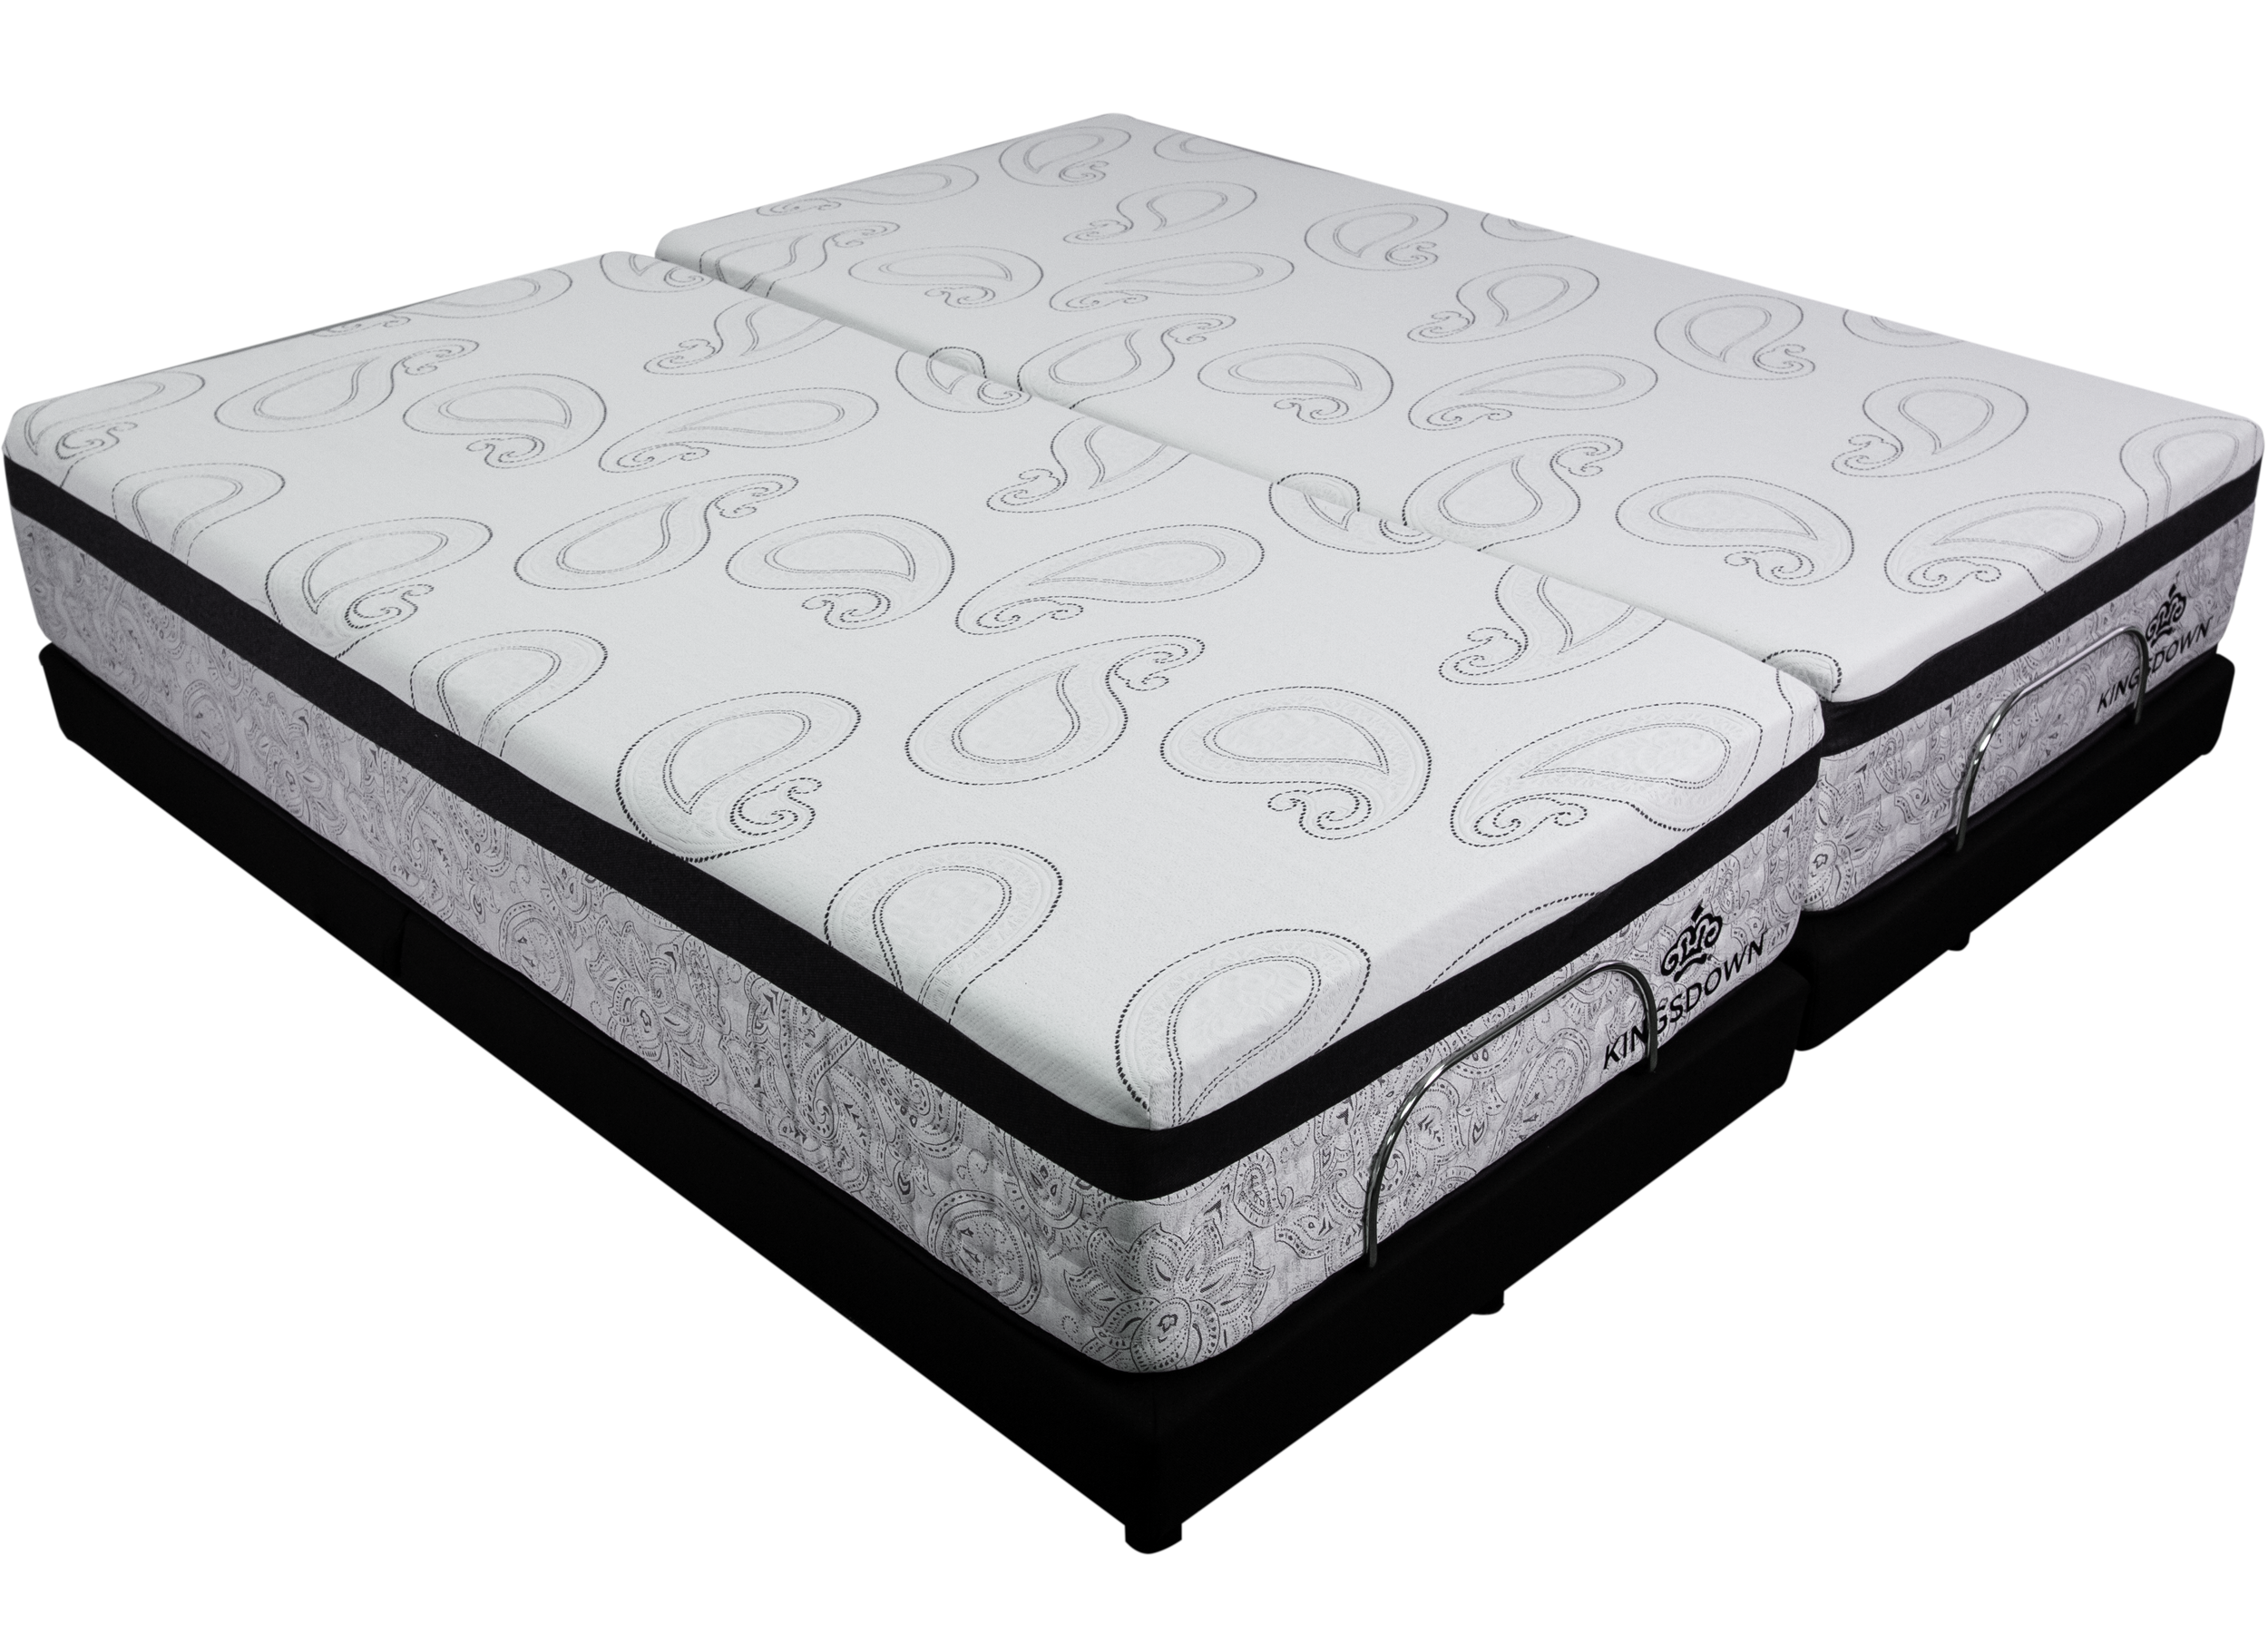 Demo Ensley Royal Split King Adjustable Bed Package